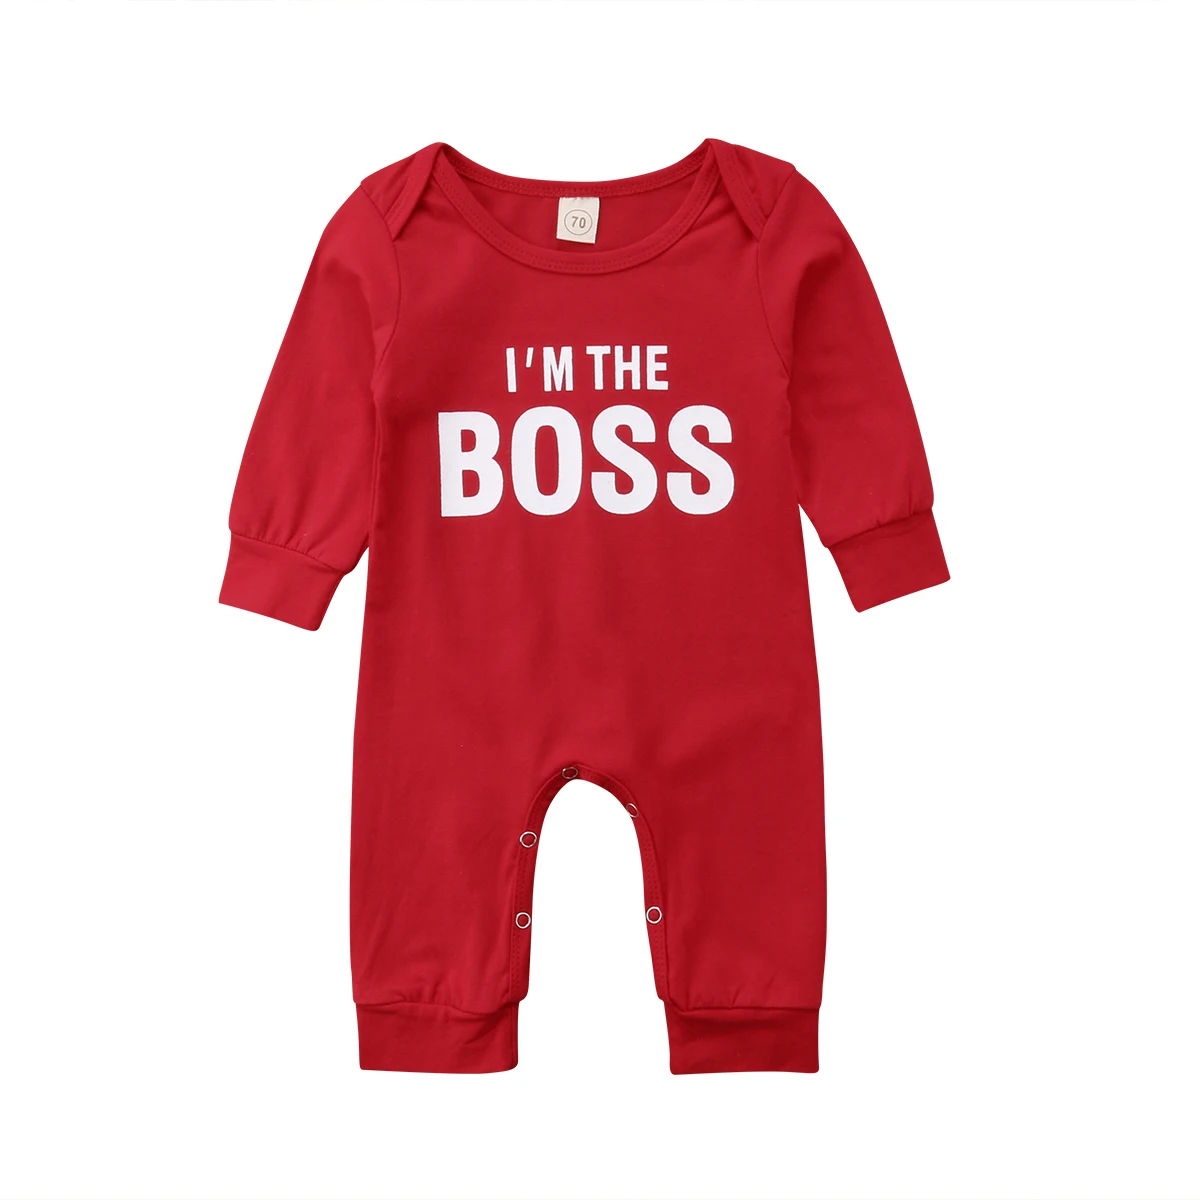 Лидер продаж; милый Рождественский комбинезон с длинными рукавами для новорожденных мальчиков и девочек; комбинезон; детская одежда; красный комбинезон с надписью «I'M THE BOSS»